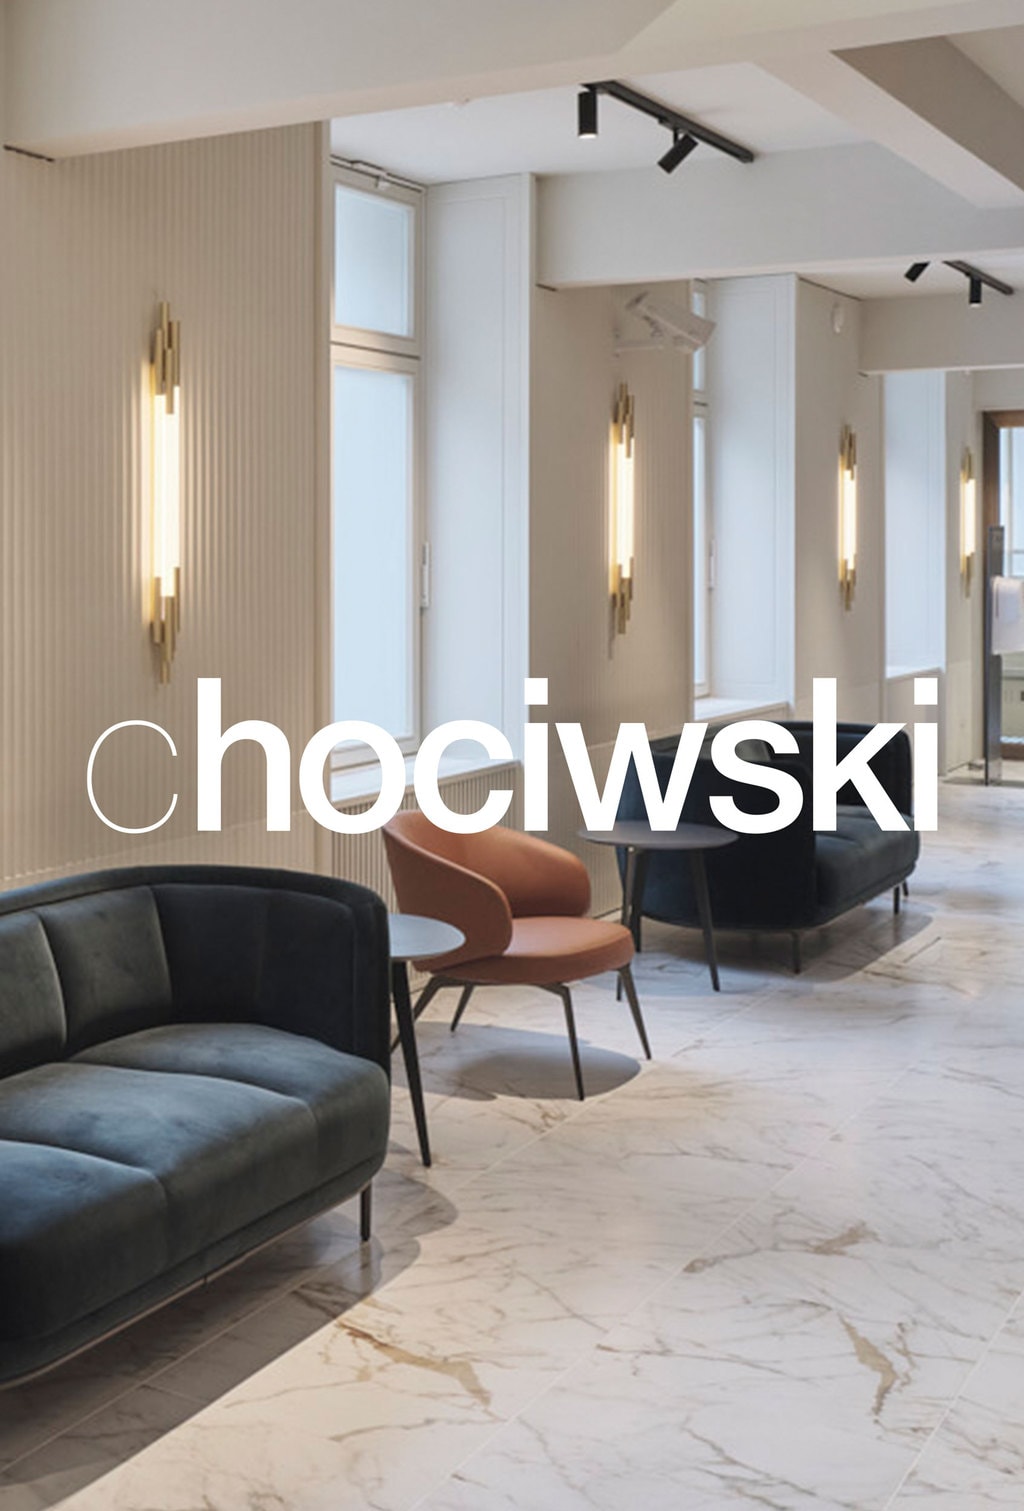 chociwski-logo-architektur_09